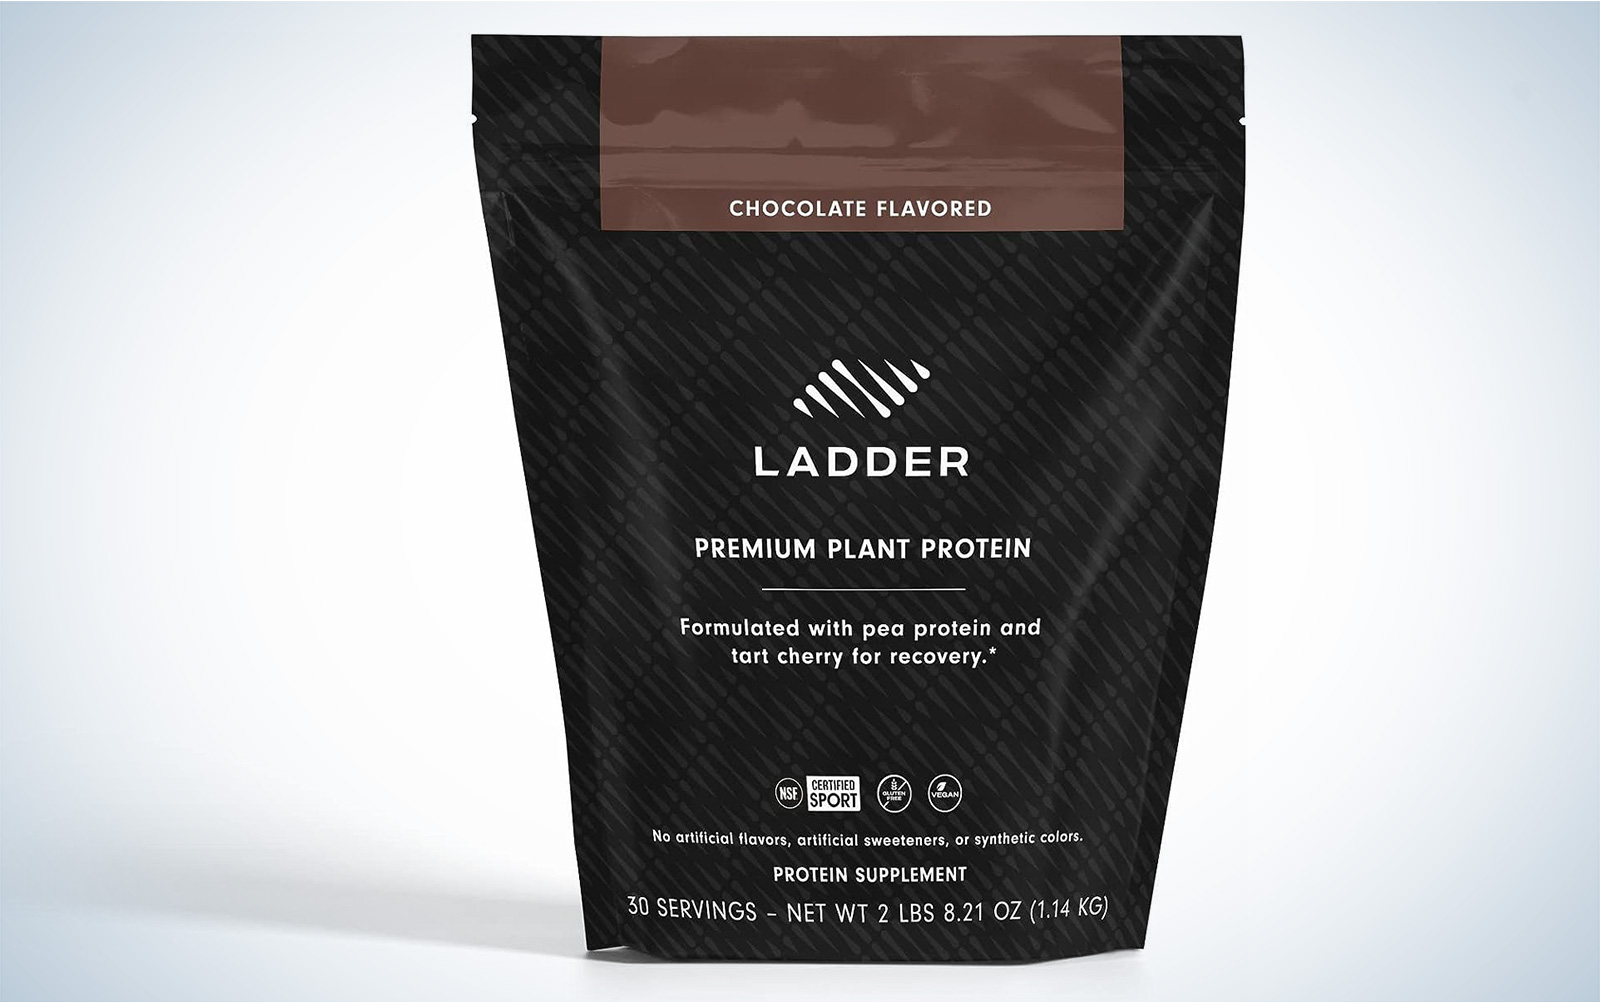 Ladder vegan protein powder